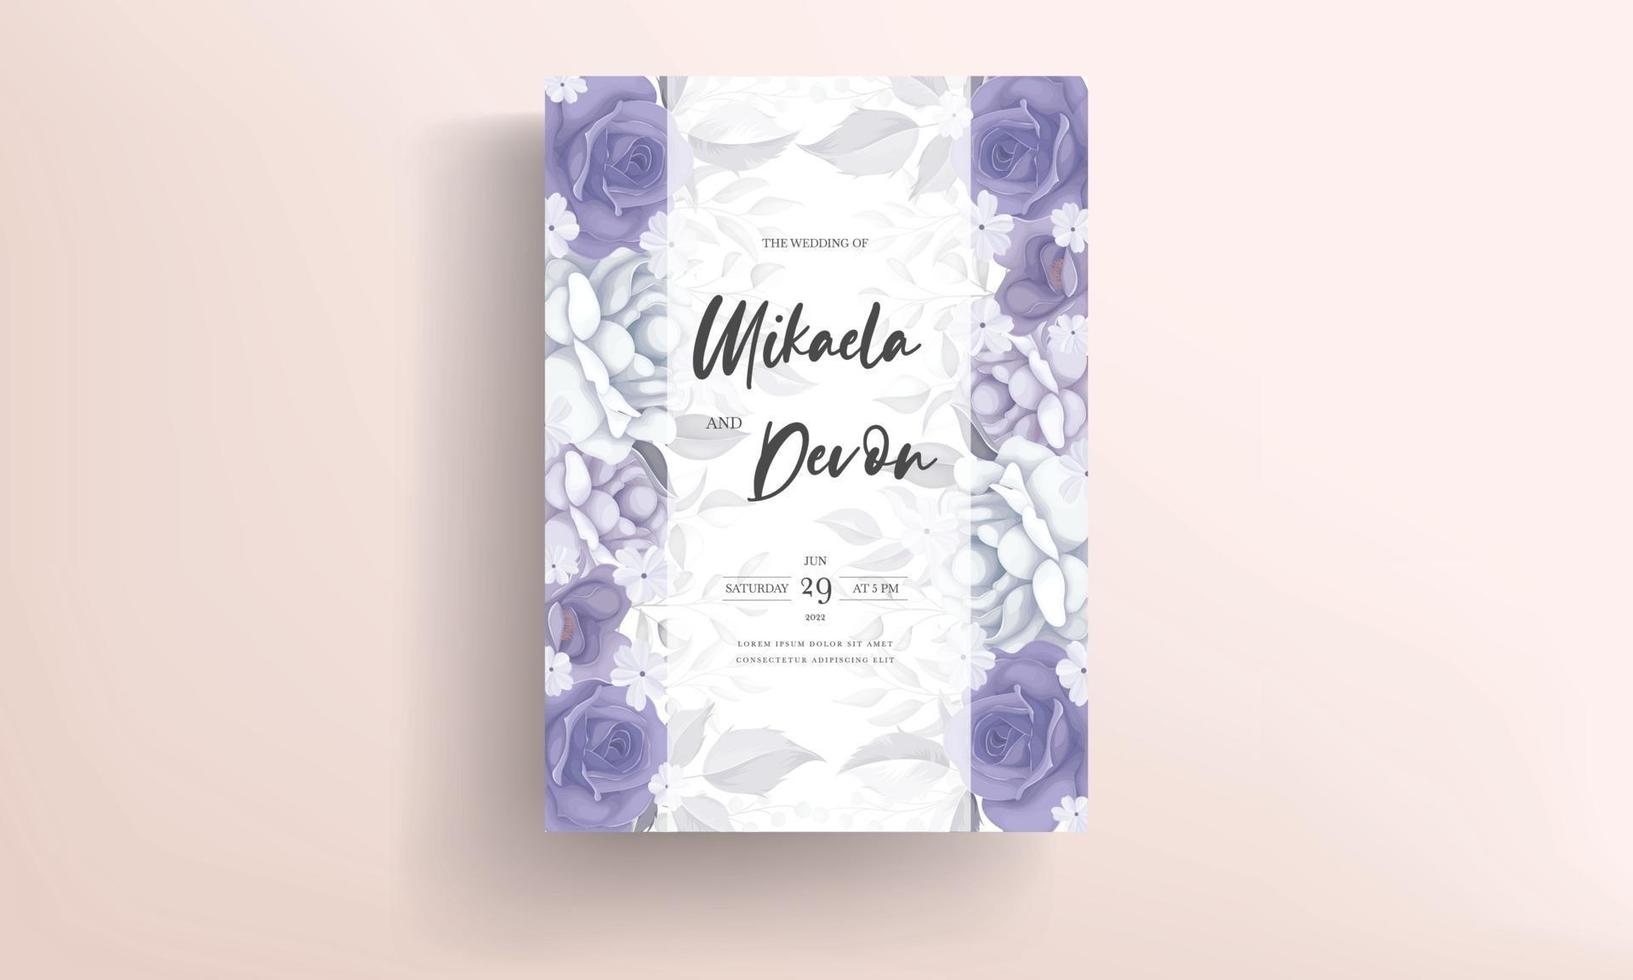 vackert bröllopsinbjudningskort med lila blommadekoration vektor